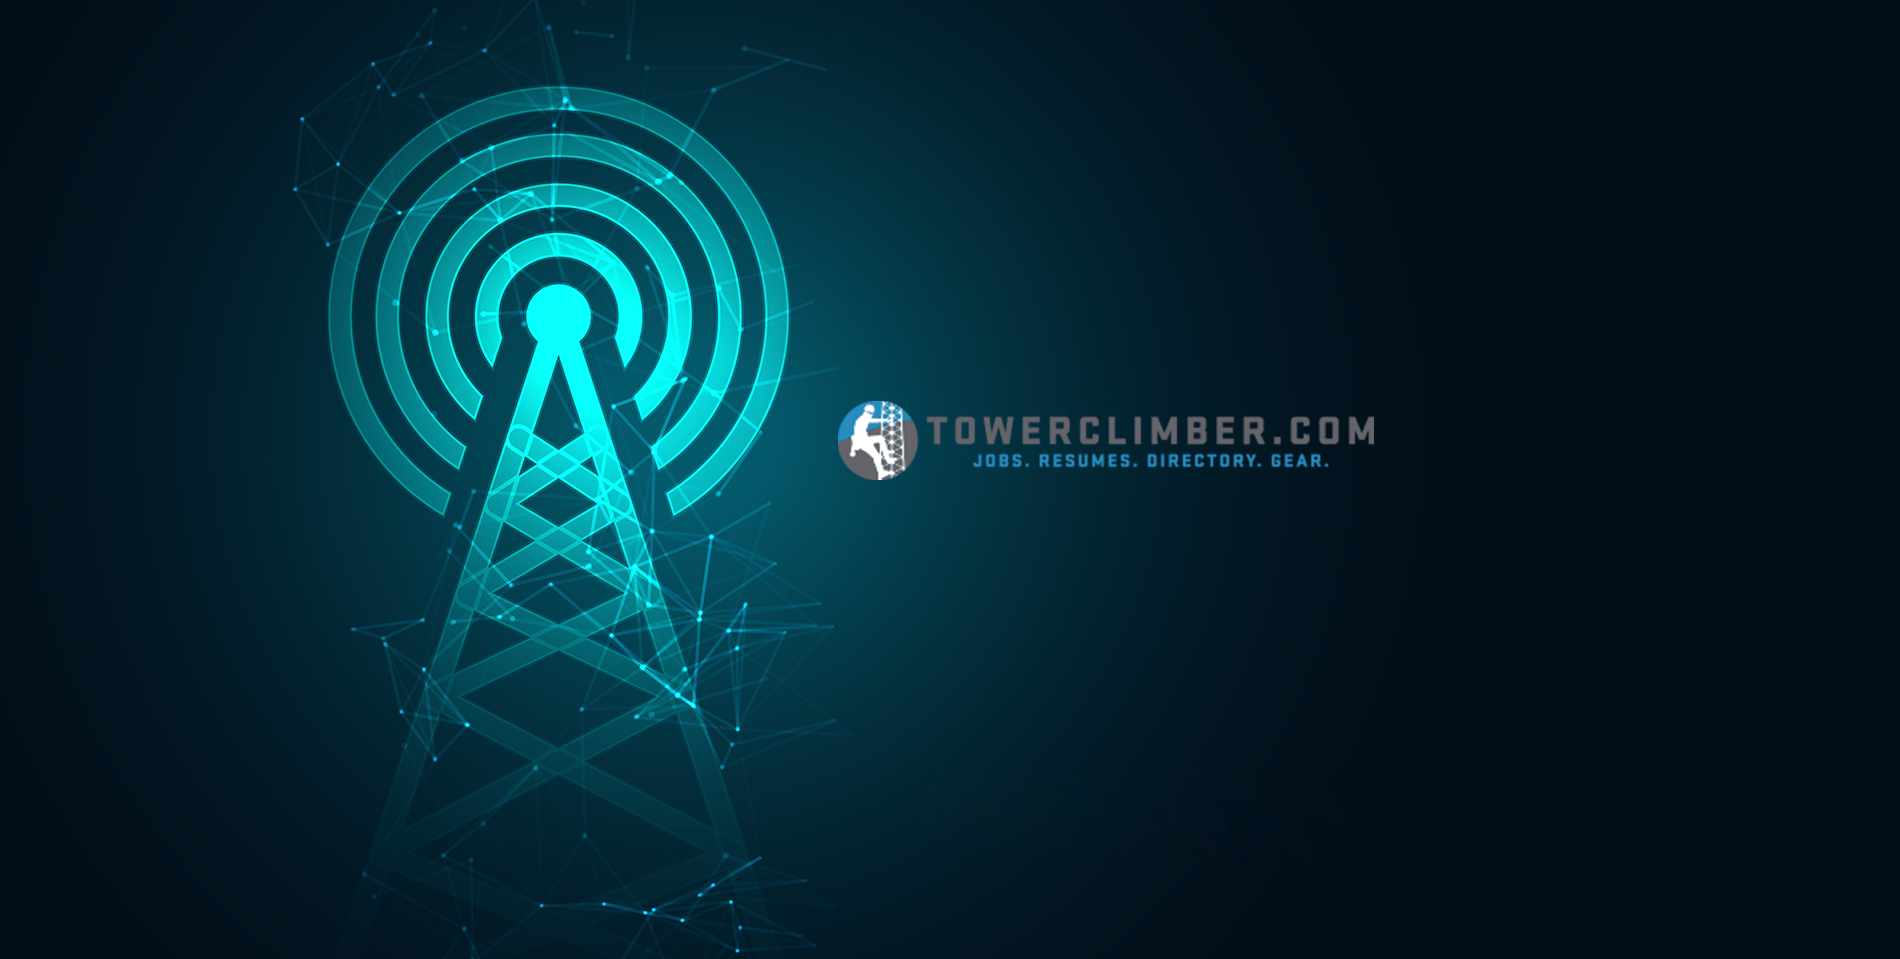 towerclimber-logo